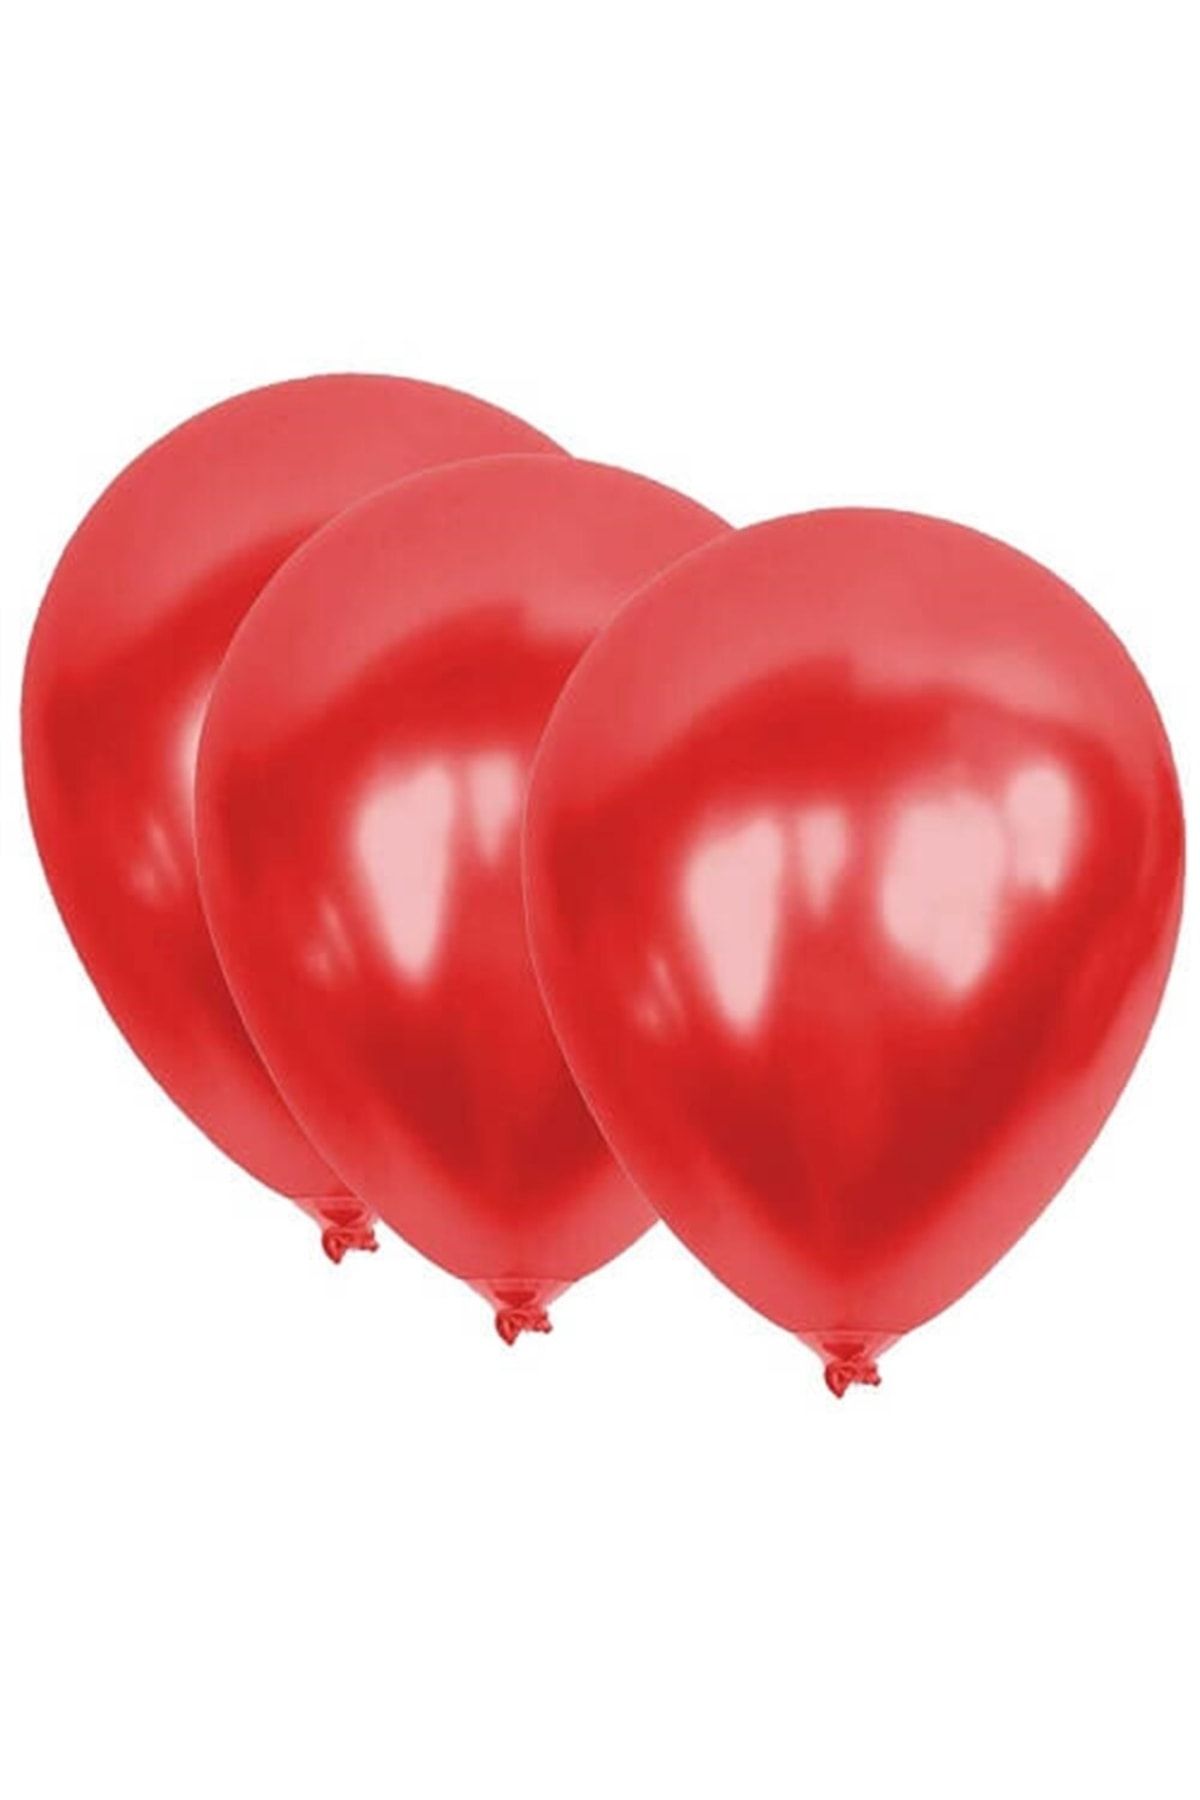 ECE PARTİ Metalik Balon Kırmızı 10 'lu Paket